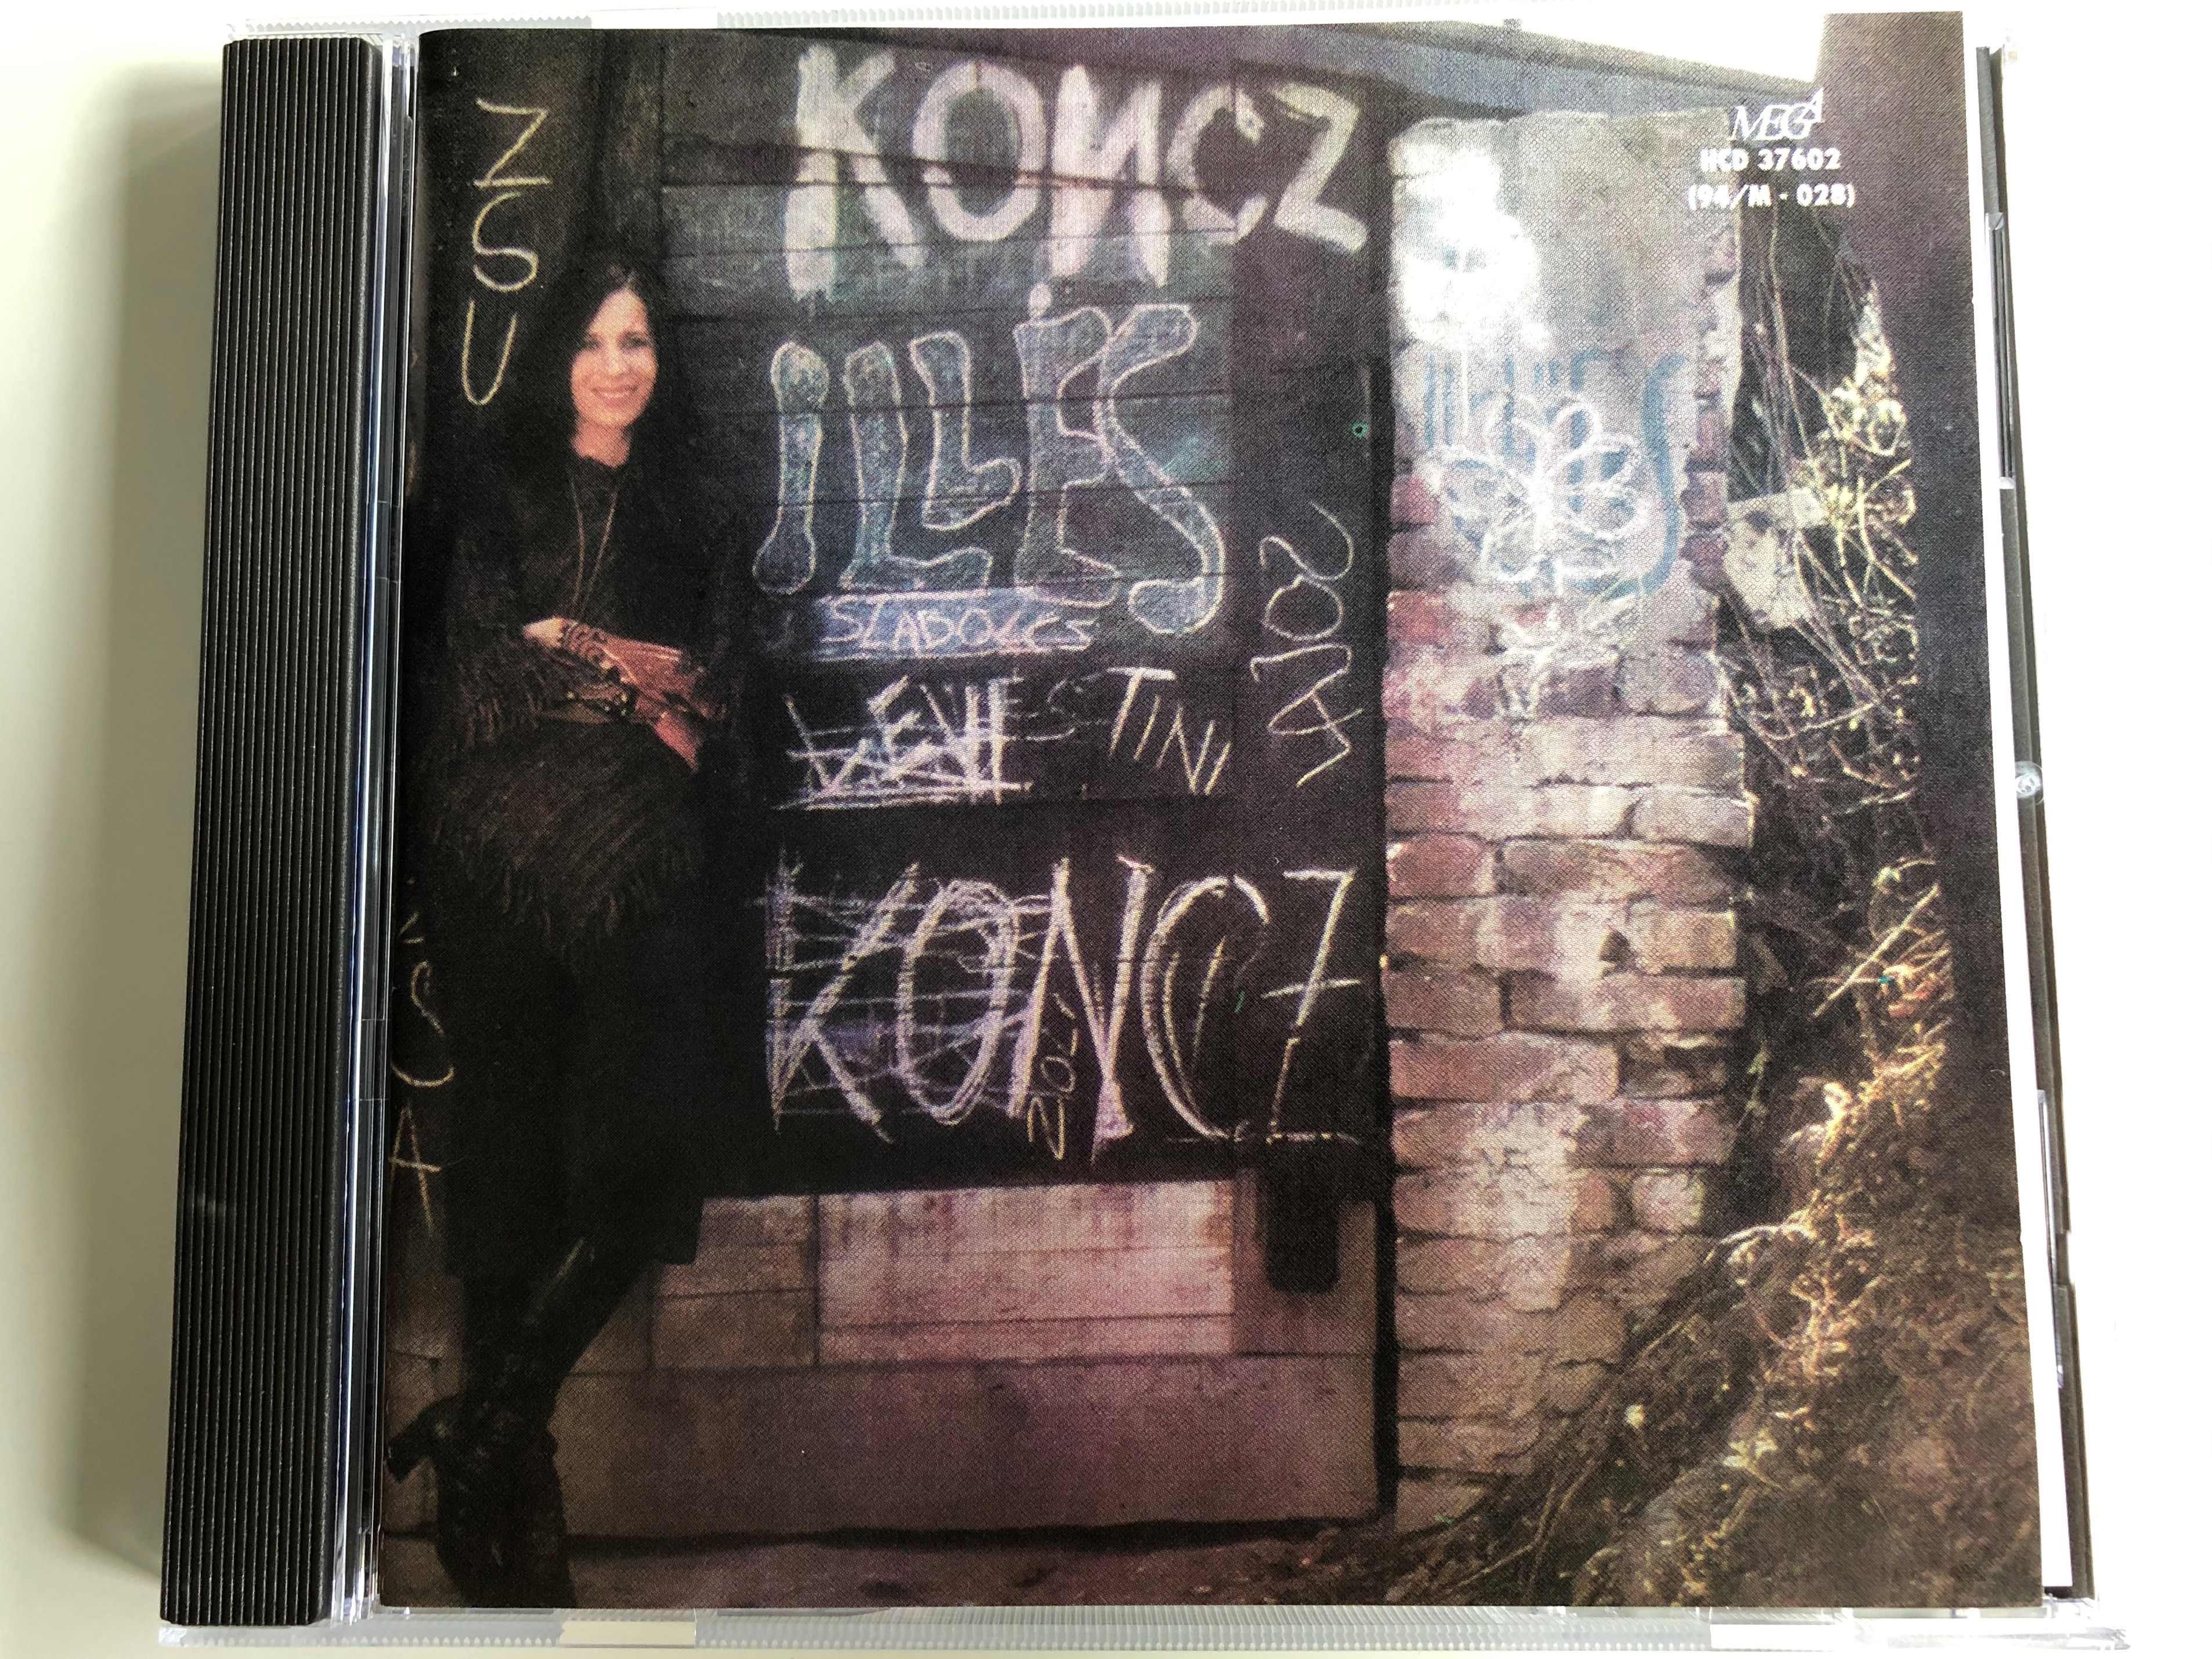 koncz-zsuzsa-kis-vir-g-mega-audio-cd-1994-hcd-37602-94m-028-1-.jpg